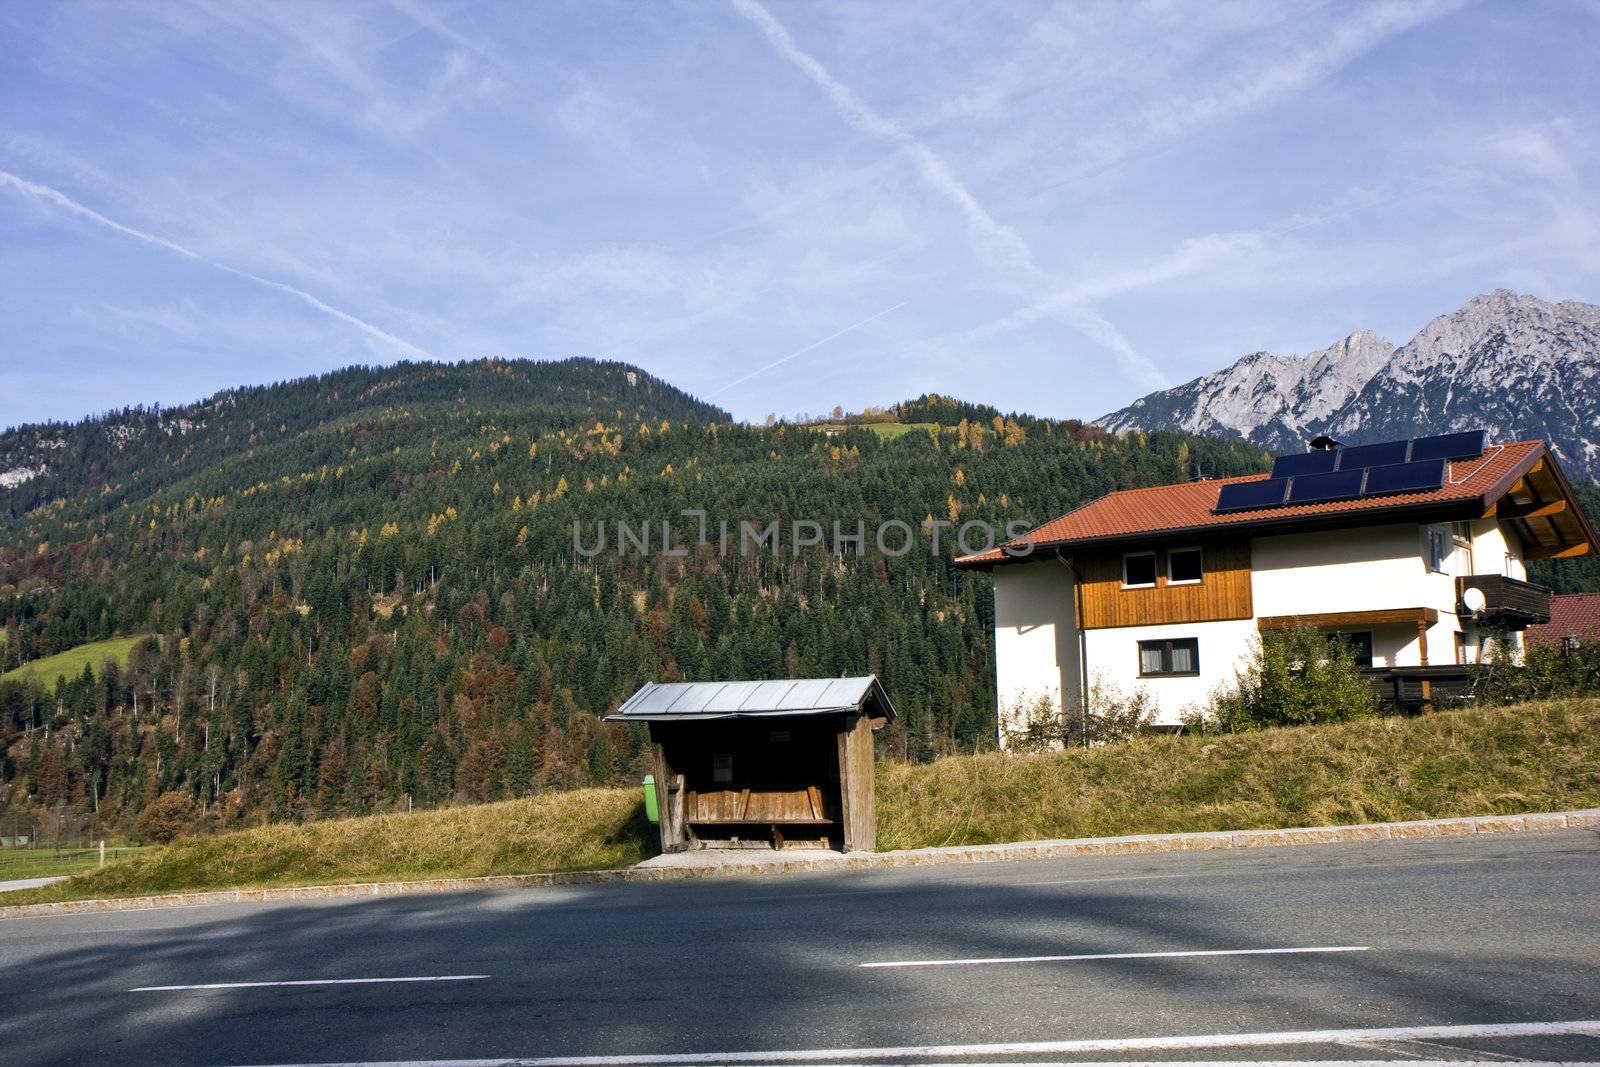 Village in Austria  by evgeshag